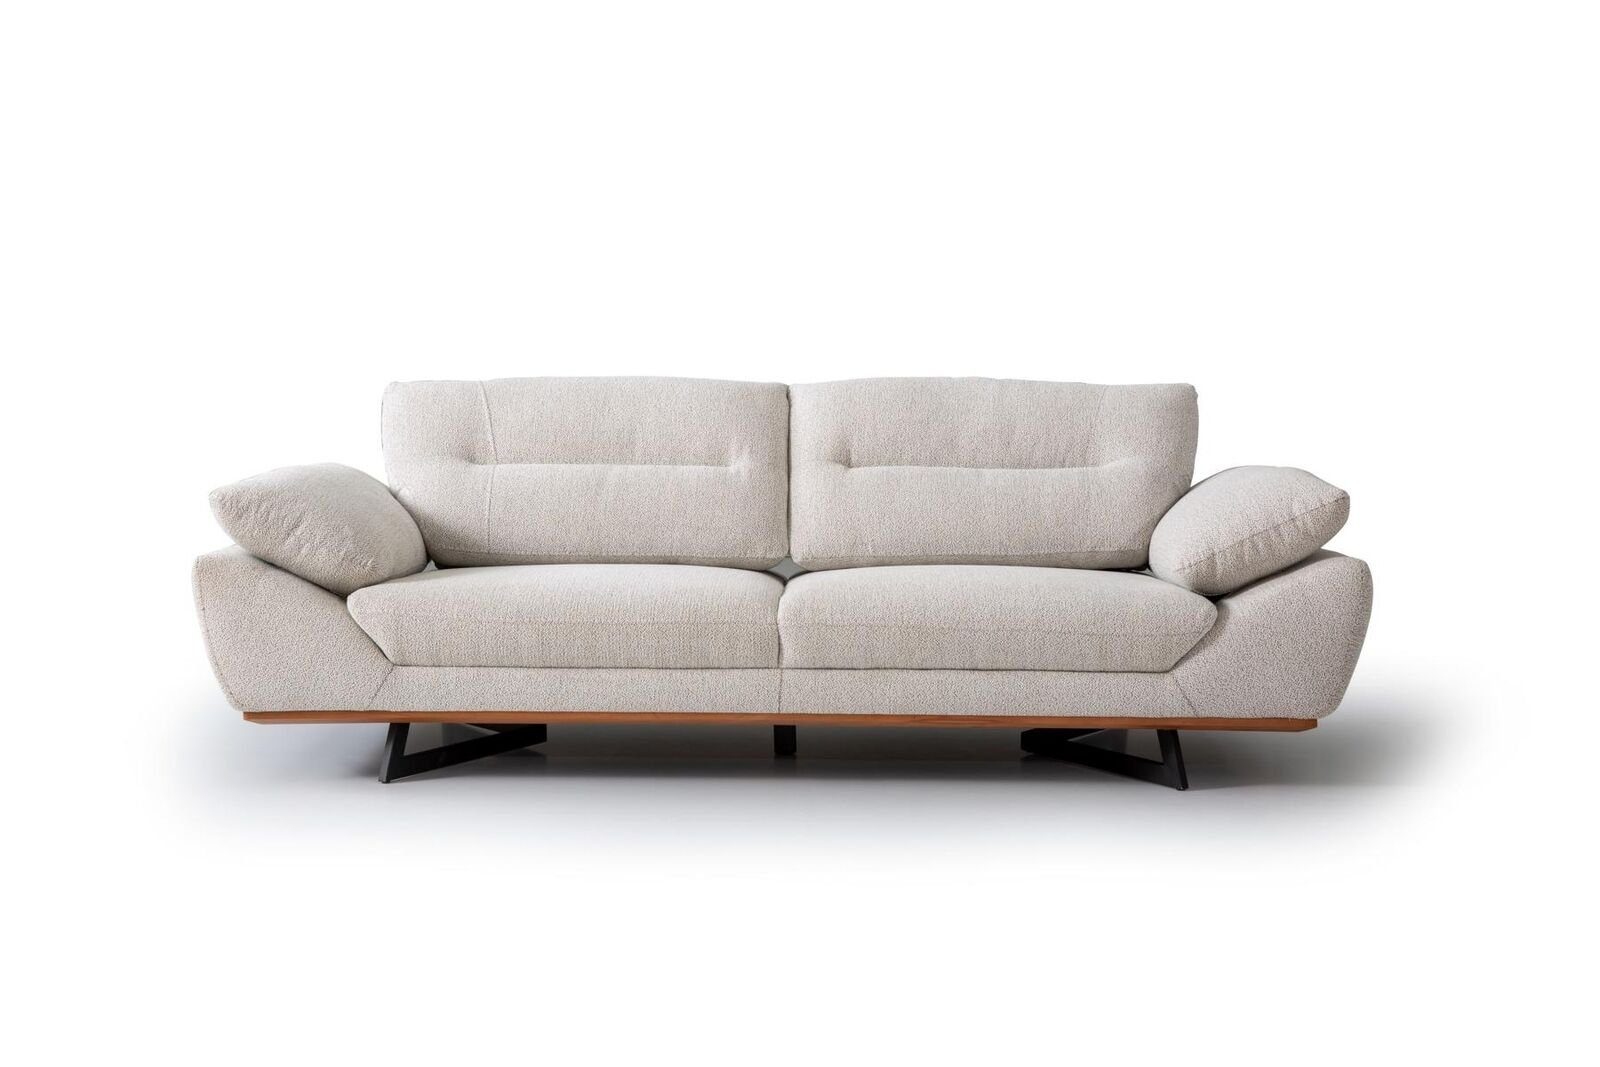 JVmoebel 3-Sitzer Designer Sofa 3 Sitzer Couch Polster Sofas Design Weiß in wohnzimmer, 1 Teile, Made in Europa | Einzelsofas